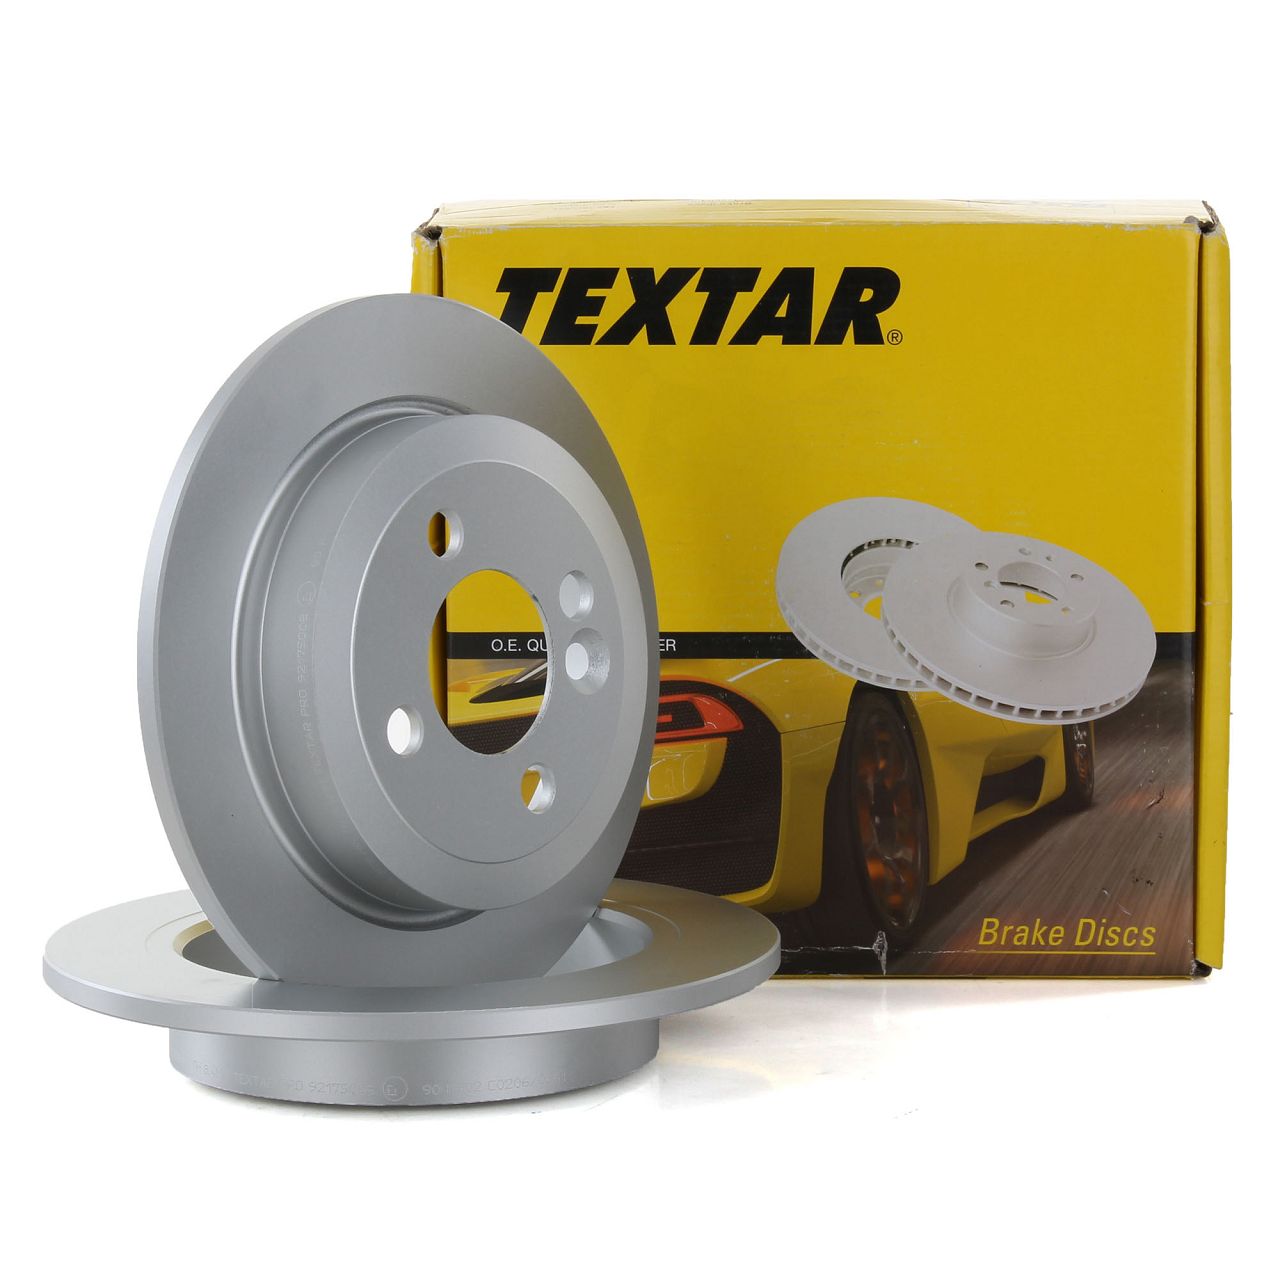 TEXTAR 92175003 Bremsscheiben Satz MINI R50 R53 R56 R52 R57 R55 R58 R59 hinten